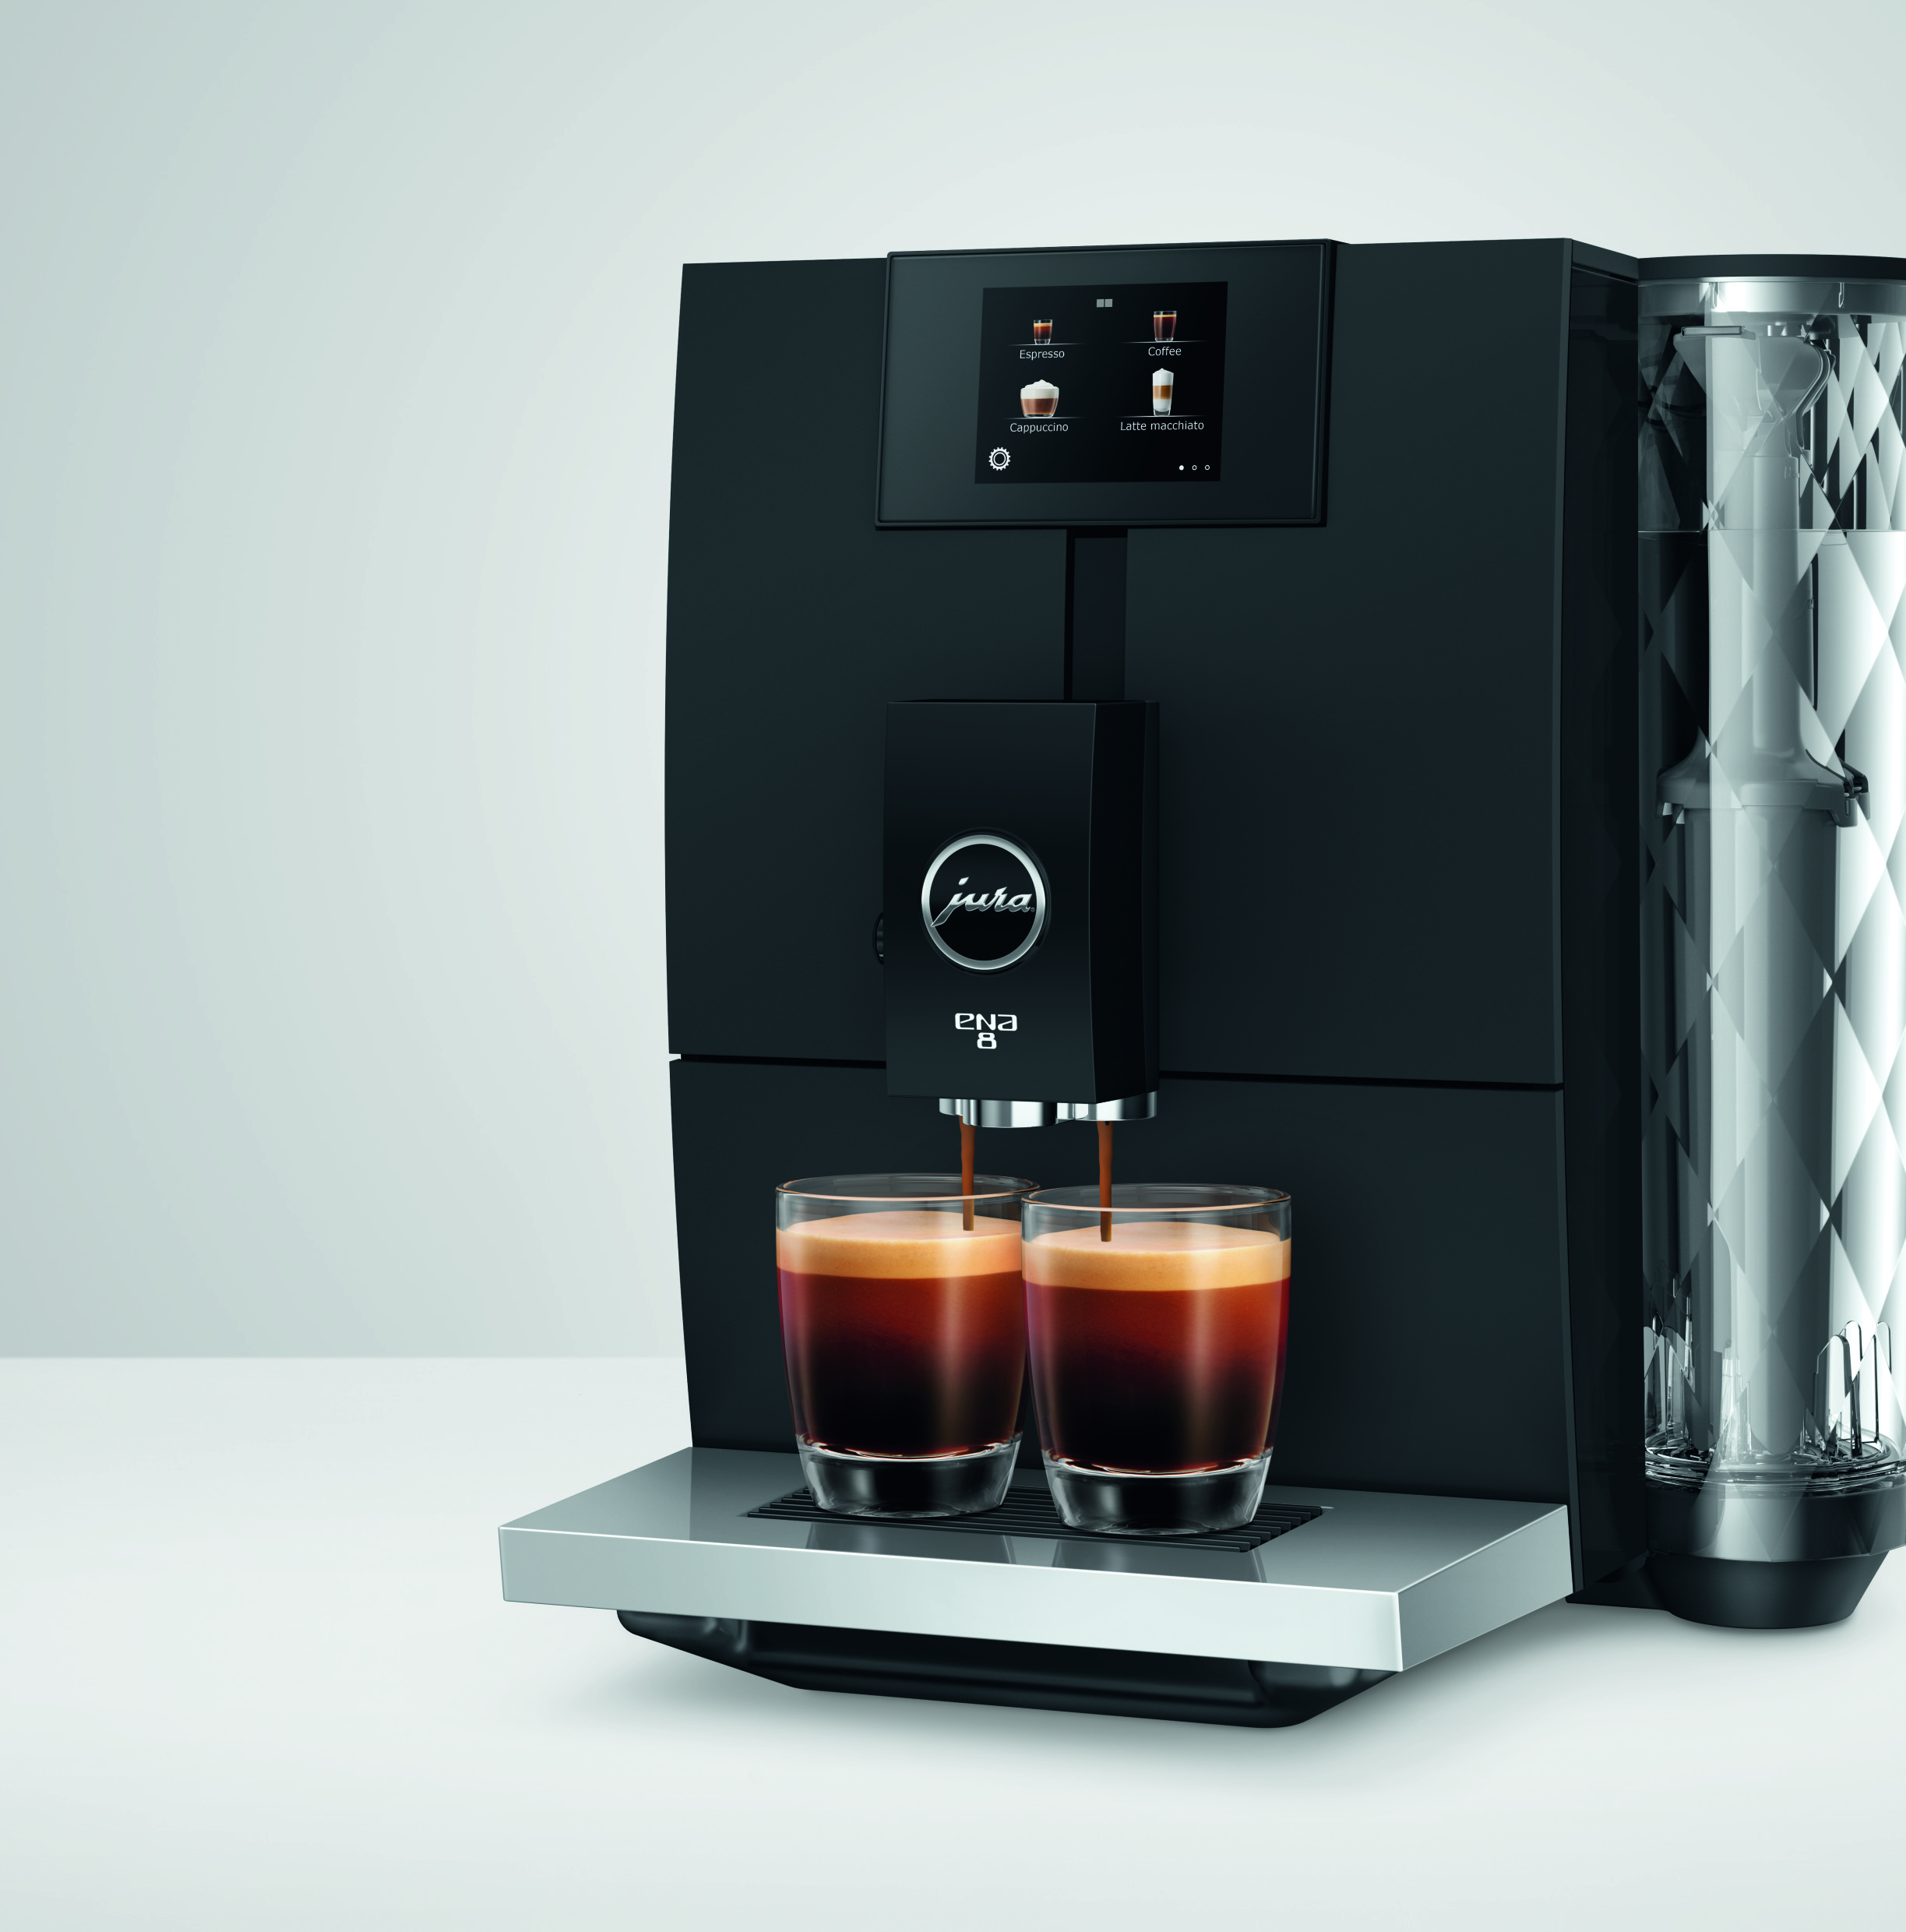 Jura gör exklusiva kaffemaskiner. Det här är en kompakt exklusiv kaffemaskin till bra pris.